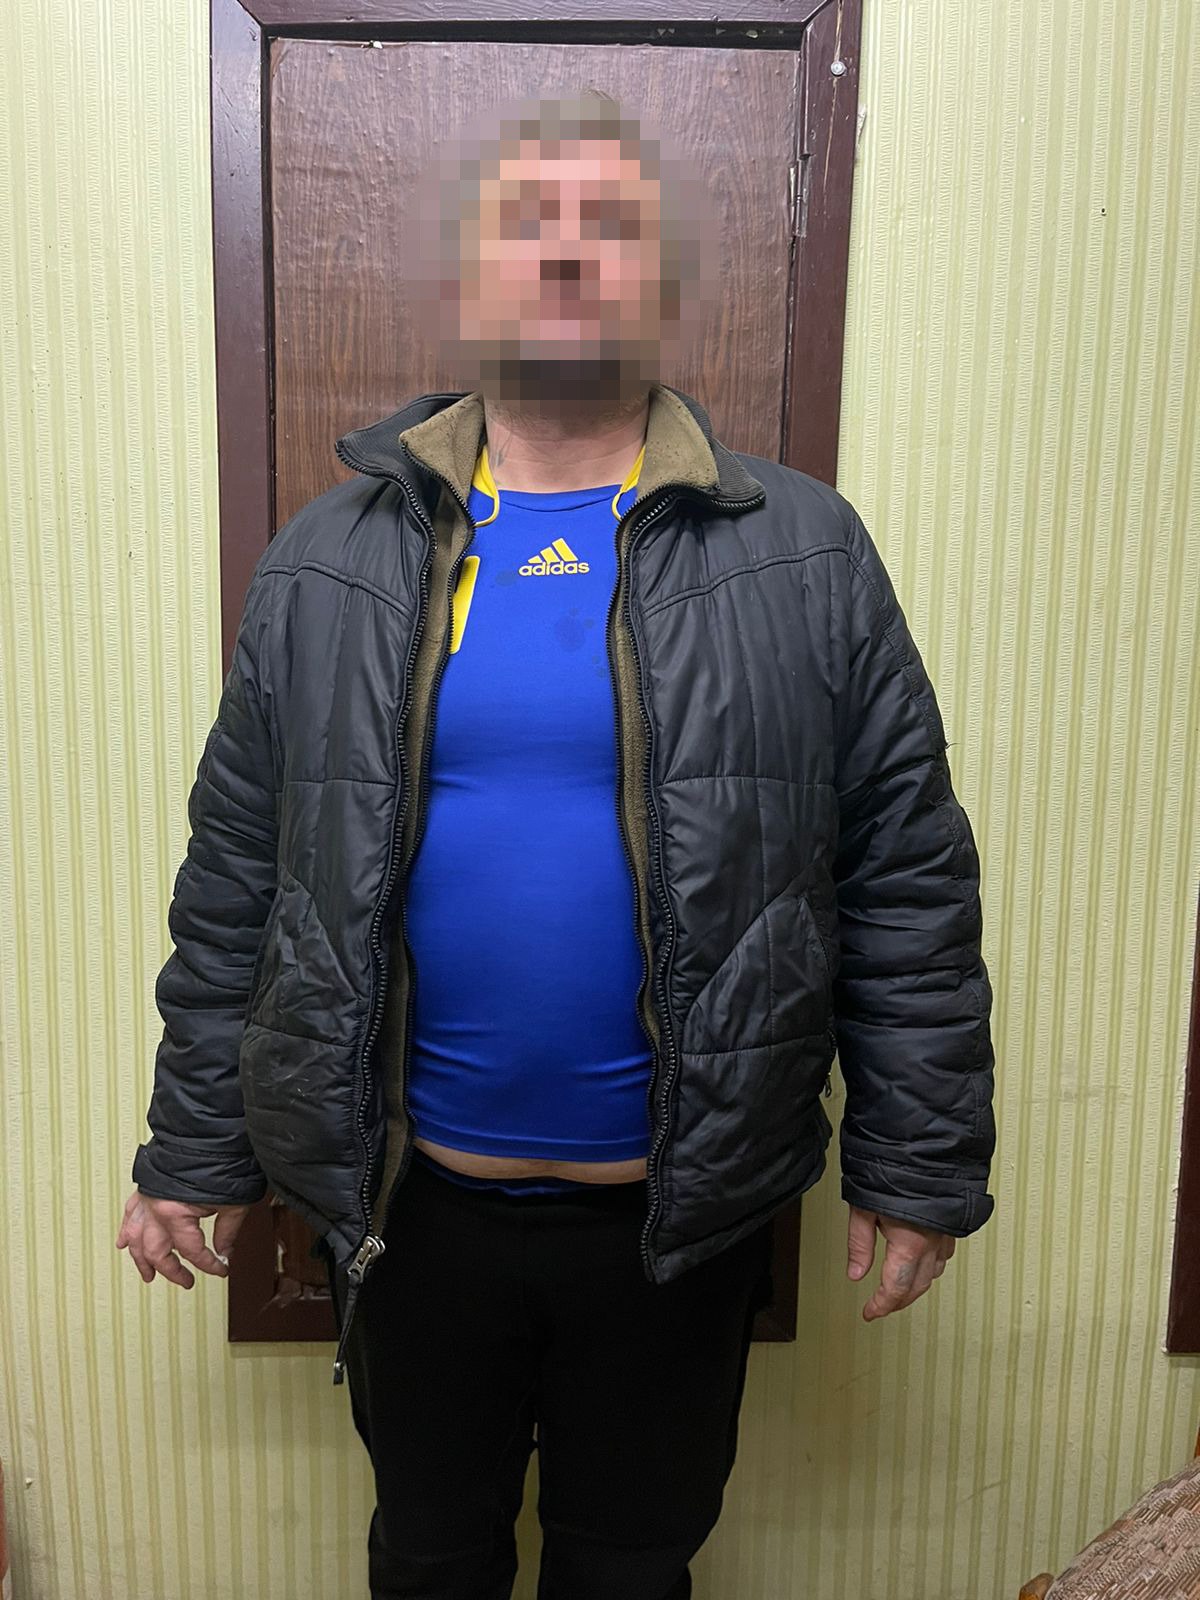 Нападал в лифте на девушек. Полиция задержала серийного насильника в Харькове